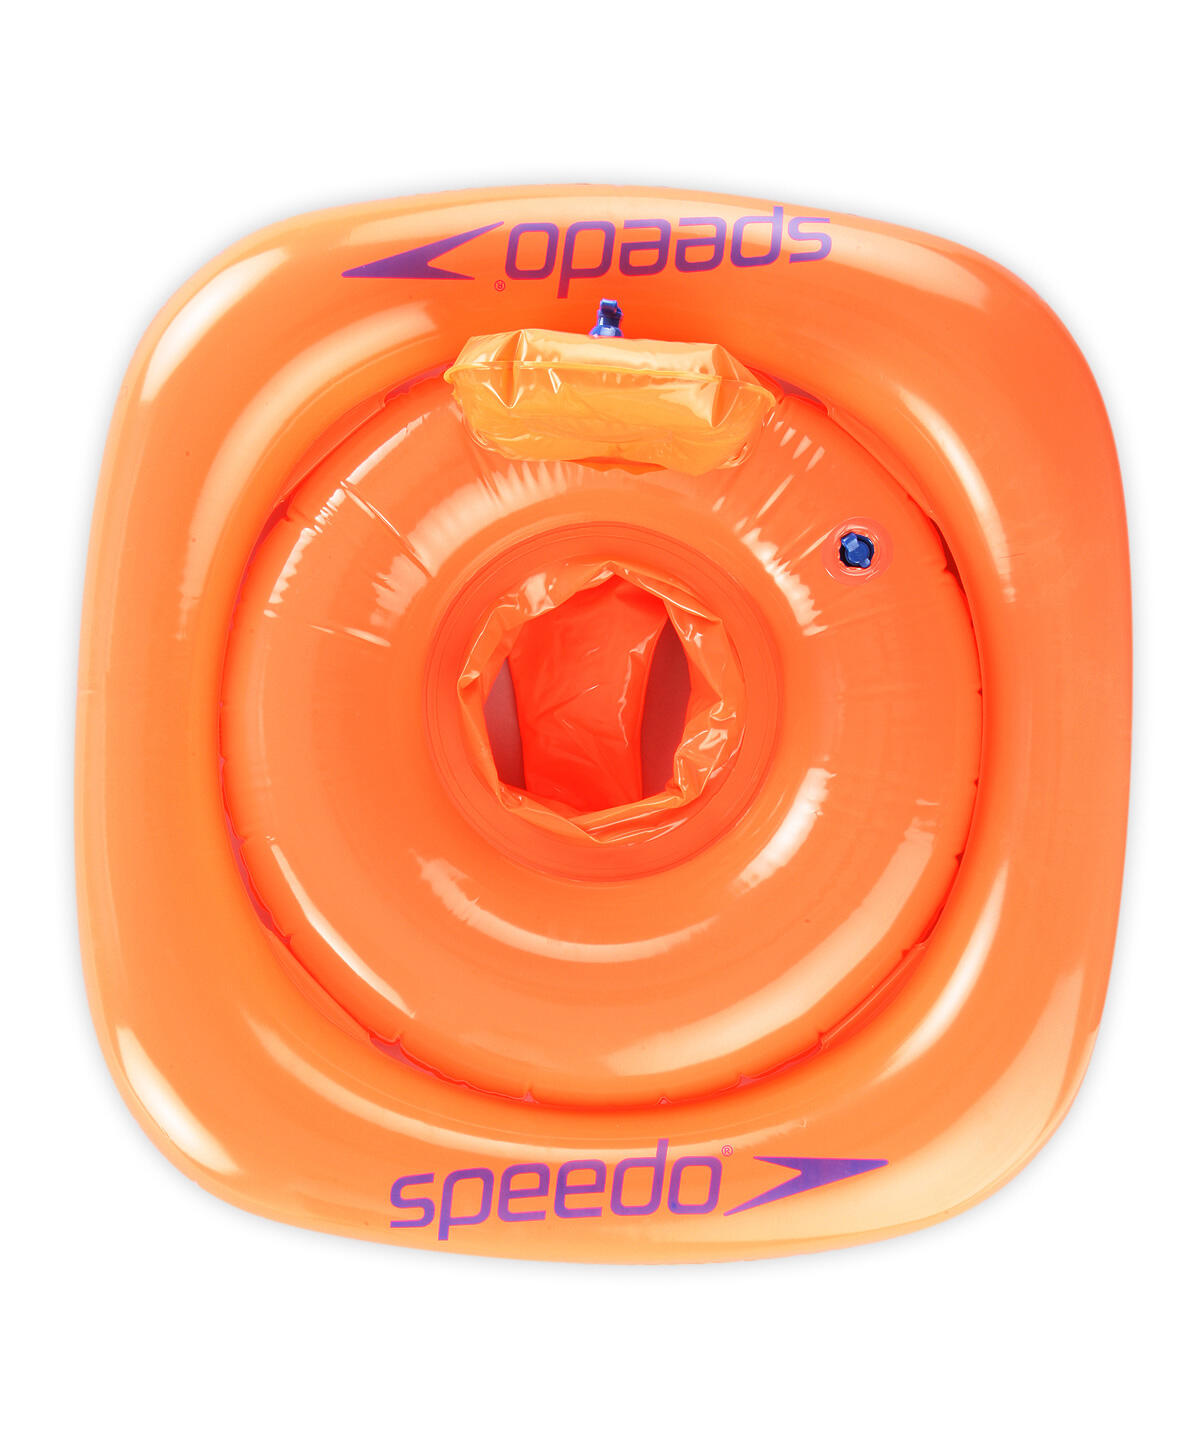 Speedo Swim Seat - Orange - 1 - 2 Years 3/3